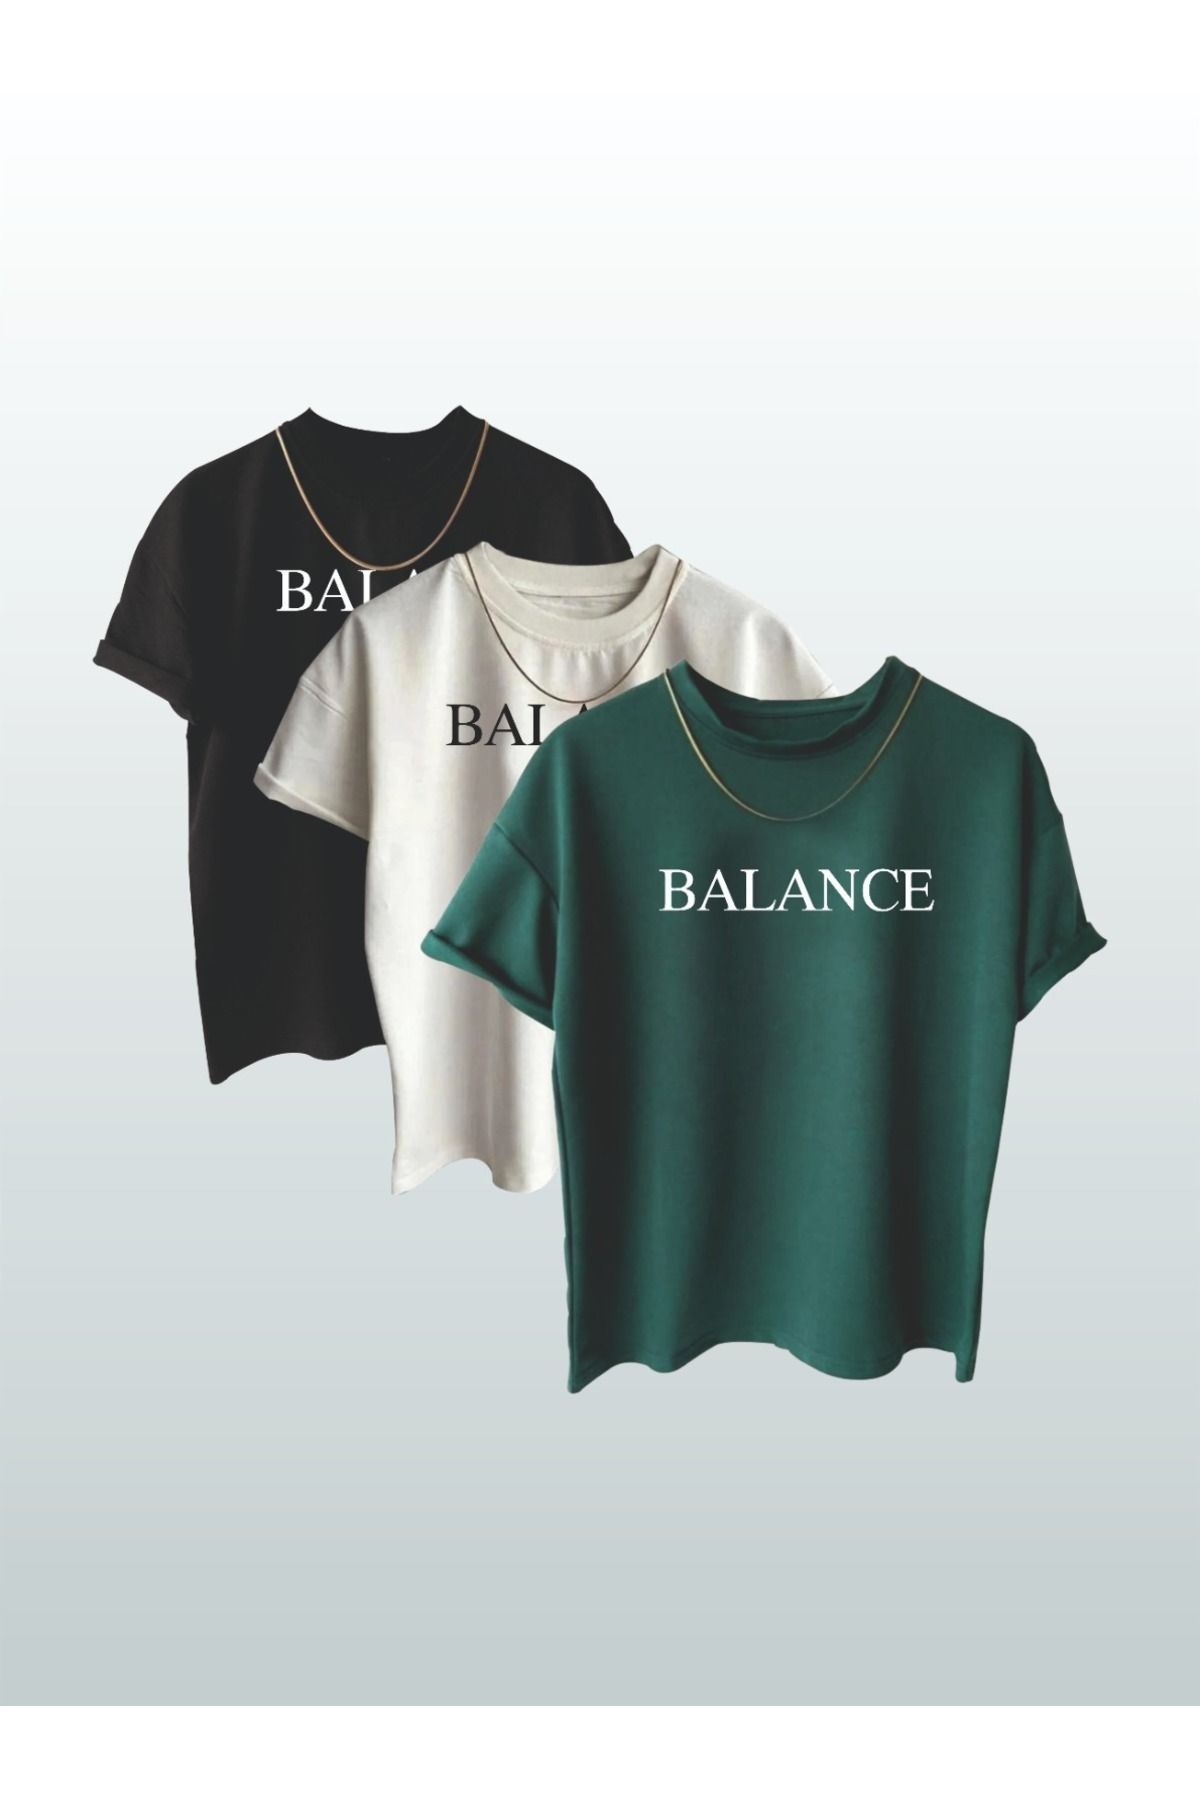 MARECASH Unisex Balance  Yazılı Baskılı 3^' Lü  Oversize T-shirt